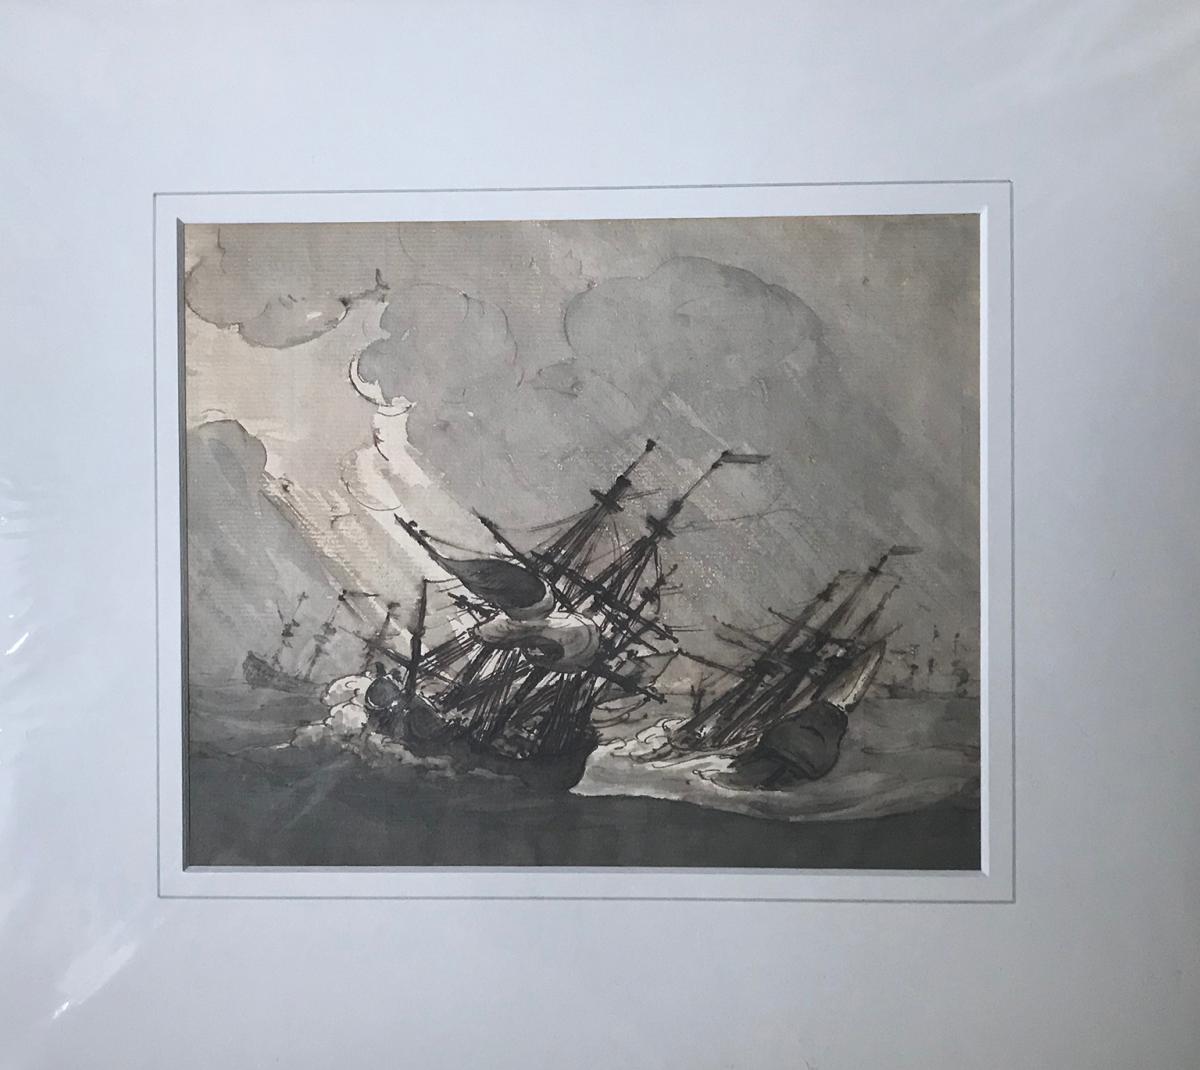 Two Three-Masters in High Seas, unknown artist (1804), follower of Willem Van de Velde